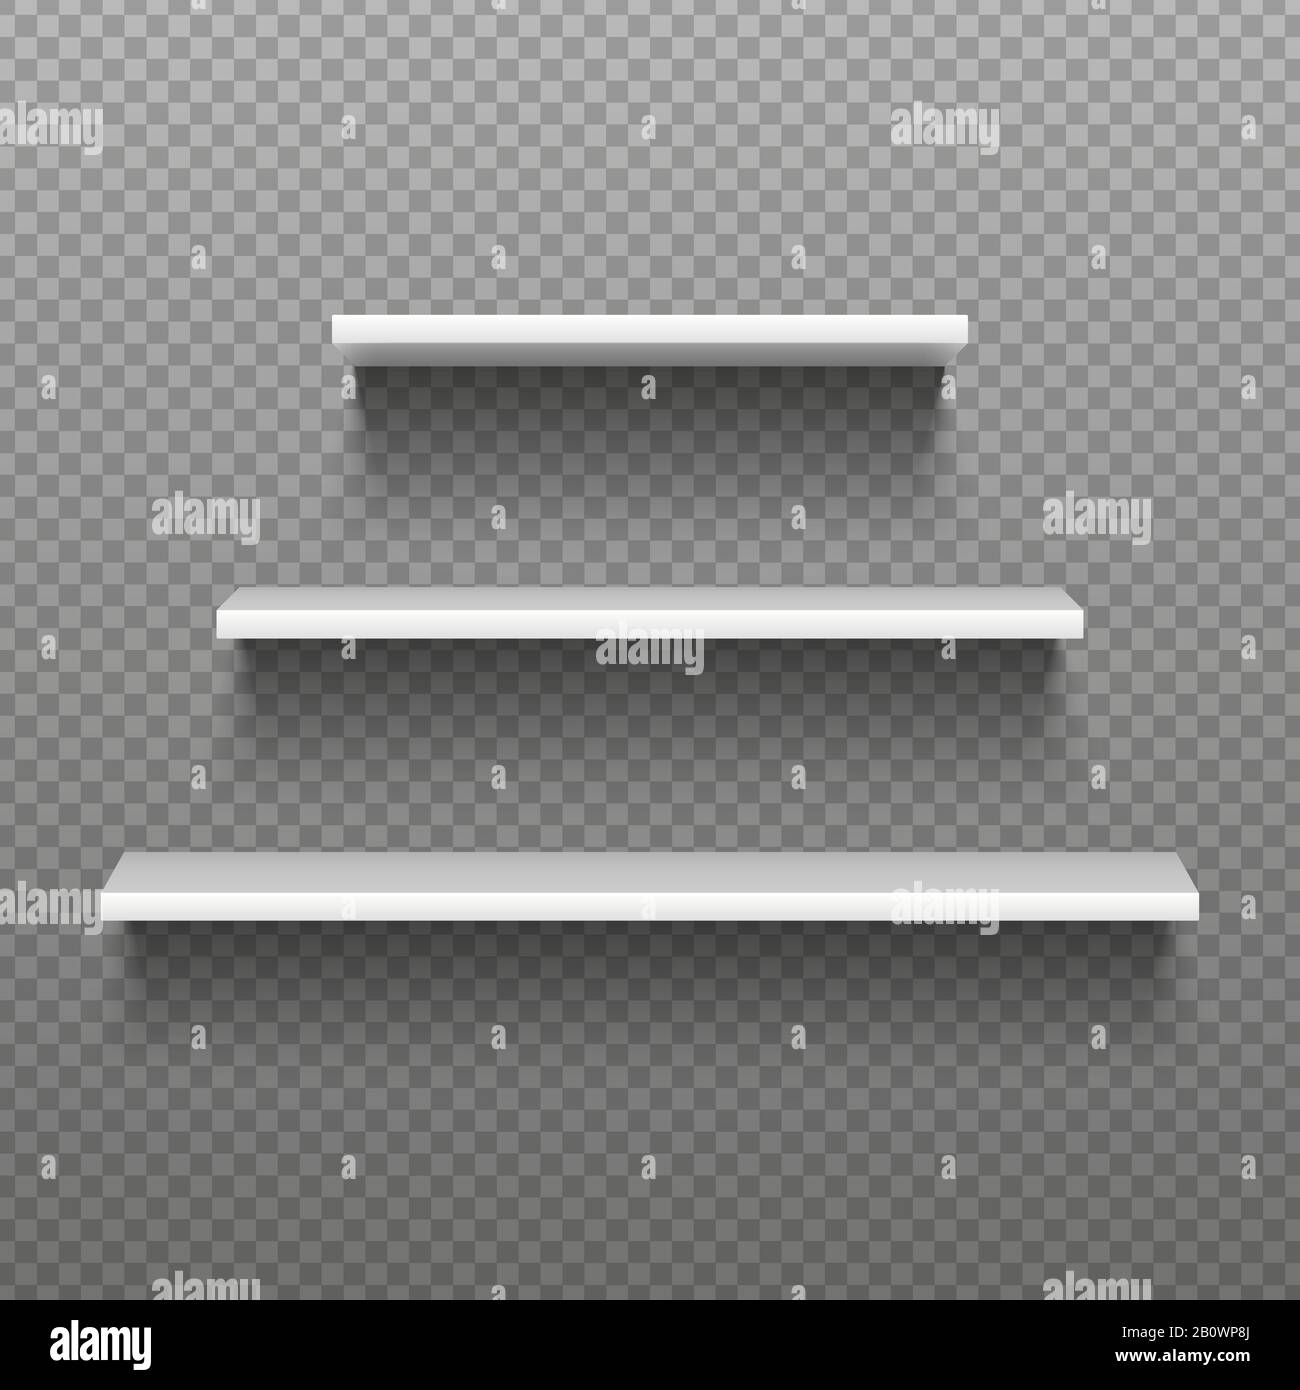 White empty shelves. Blank bookshelves. Simplicity store interior, supermarket showcase. Isolated vector illustration Stock Vector